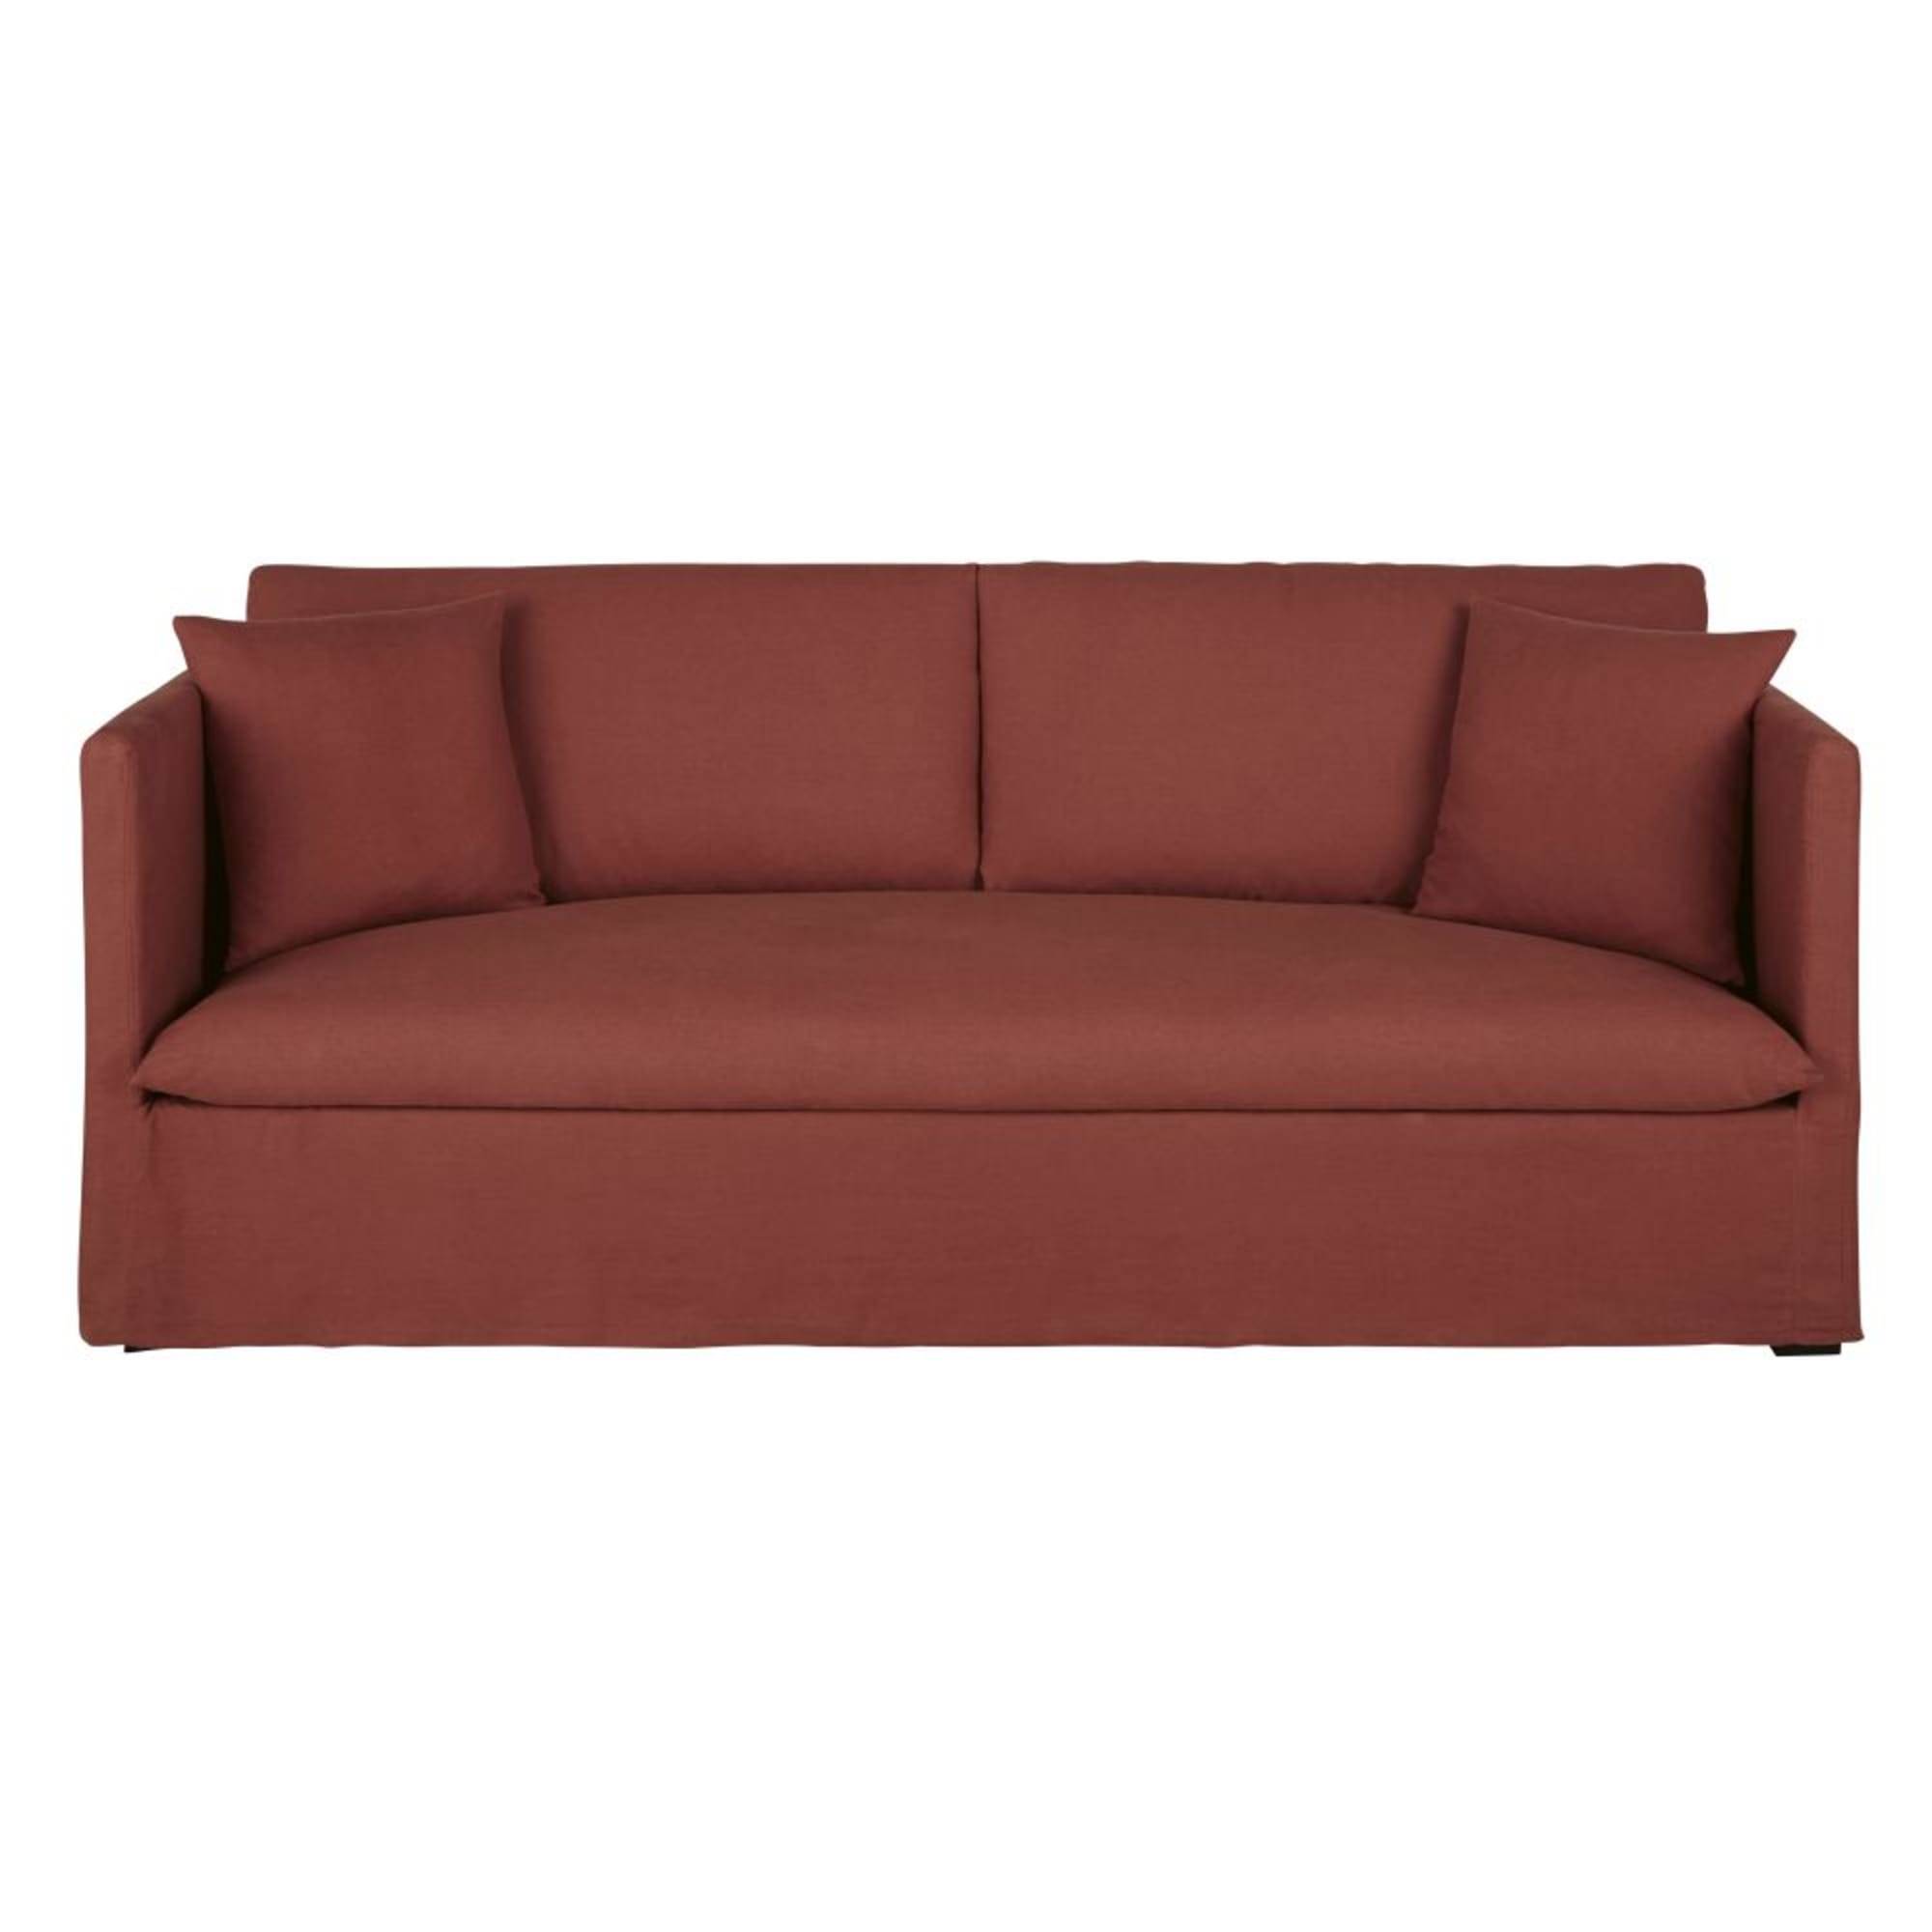 sofa-cama-de-3-4-plazas-de-lino-terracota-1000-14-23-213551_1